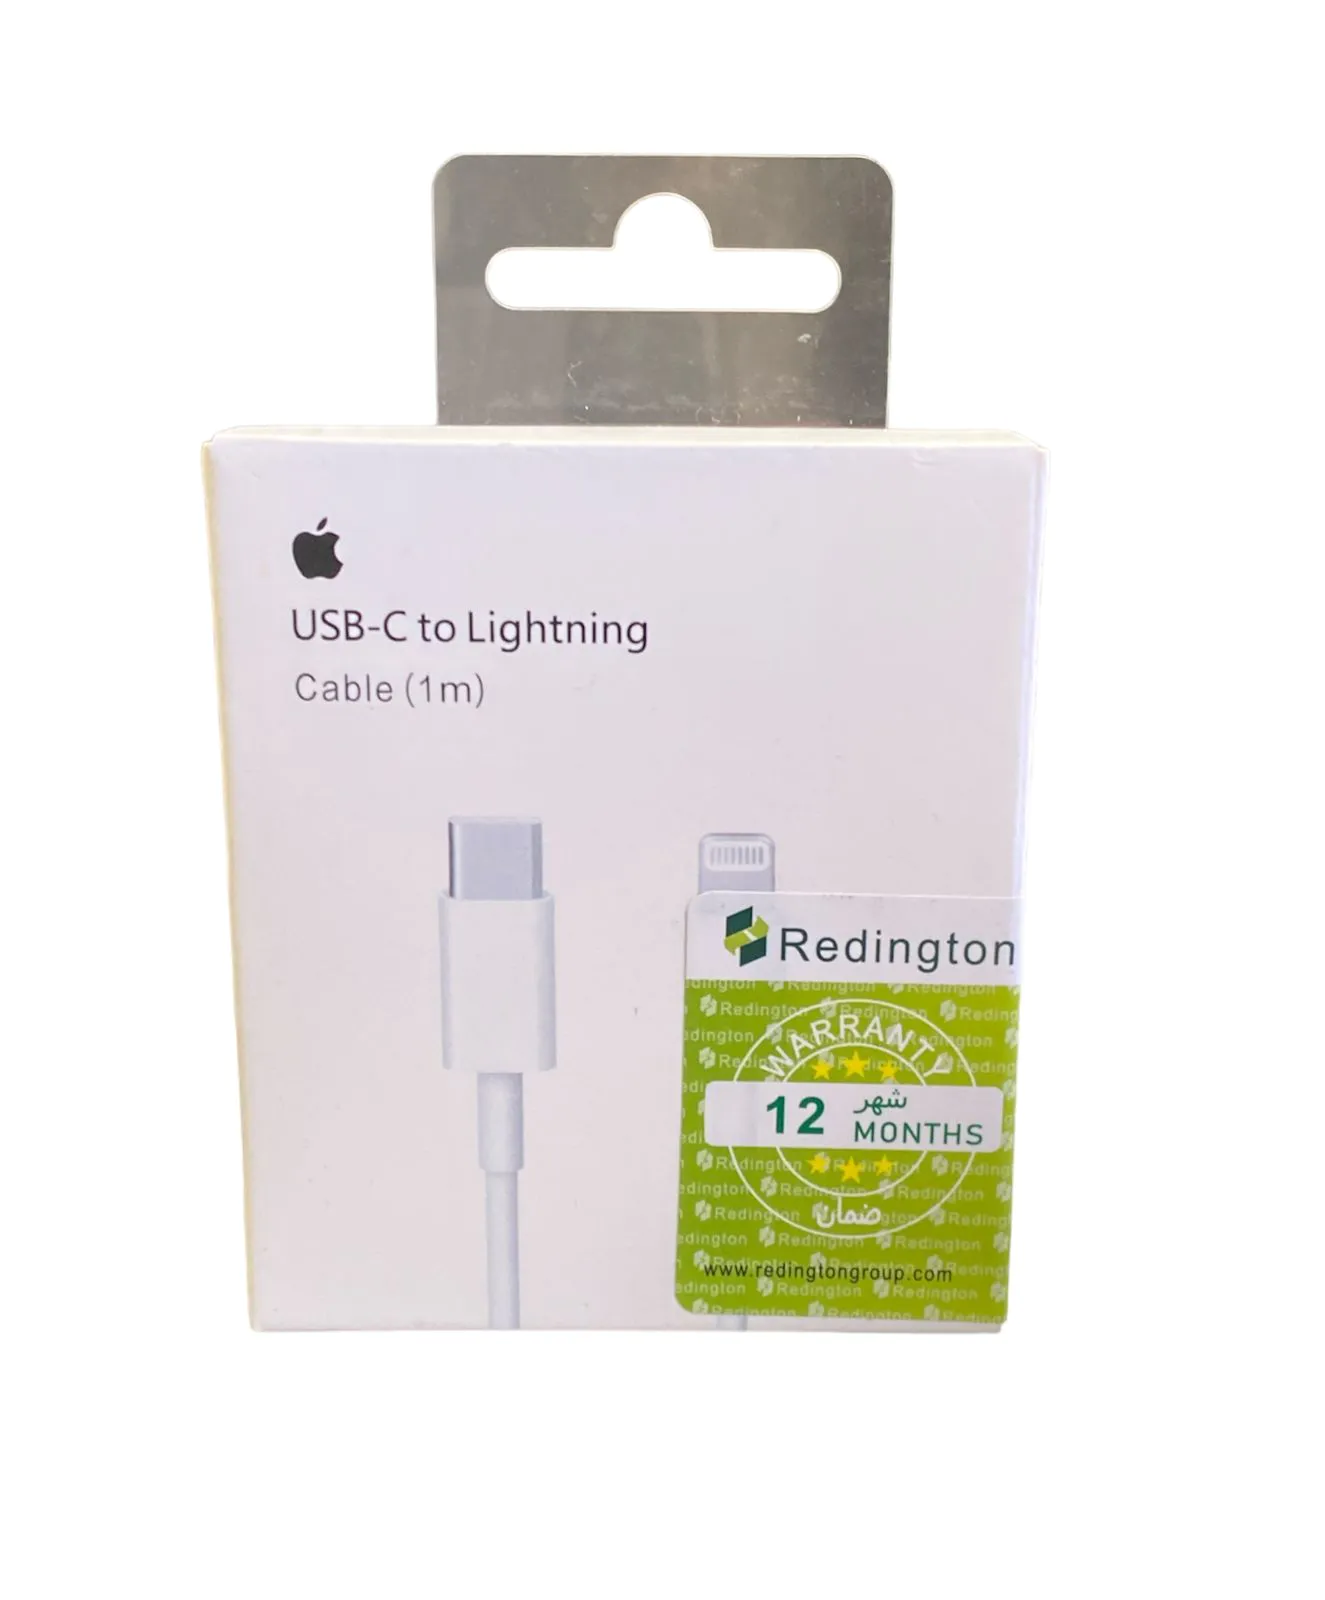 Redington USB-C to Lightning Cable Price in Sri Lanka- Mister Mobile